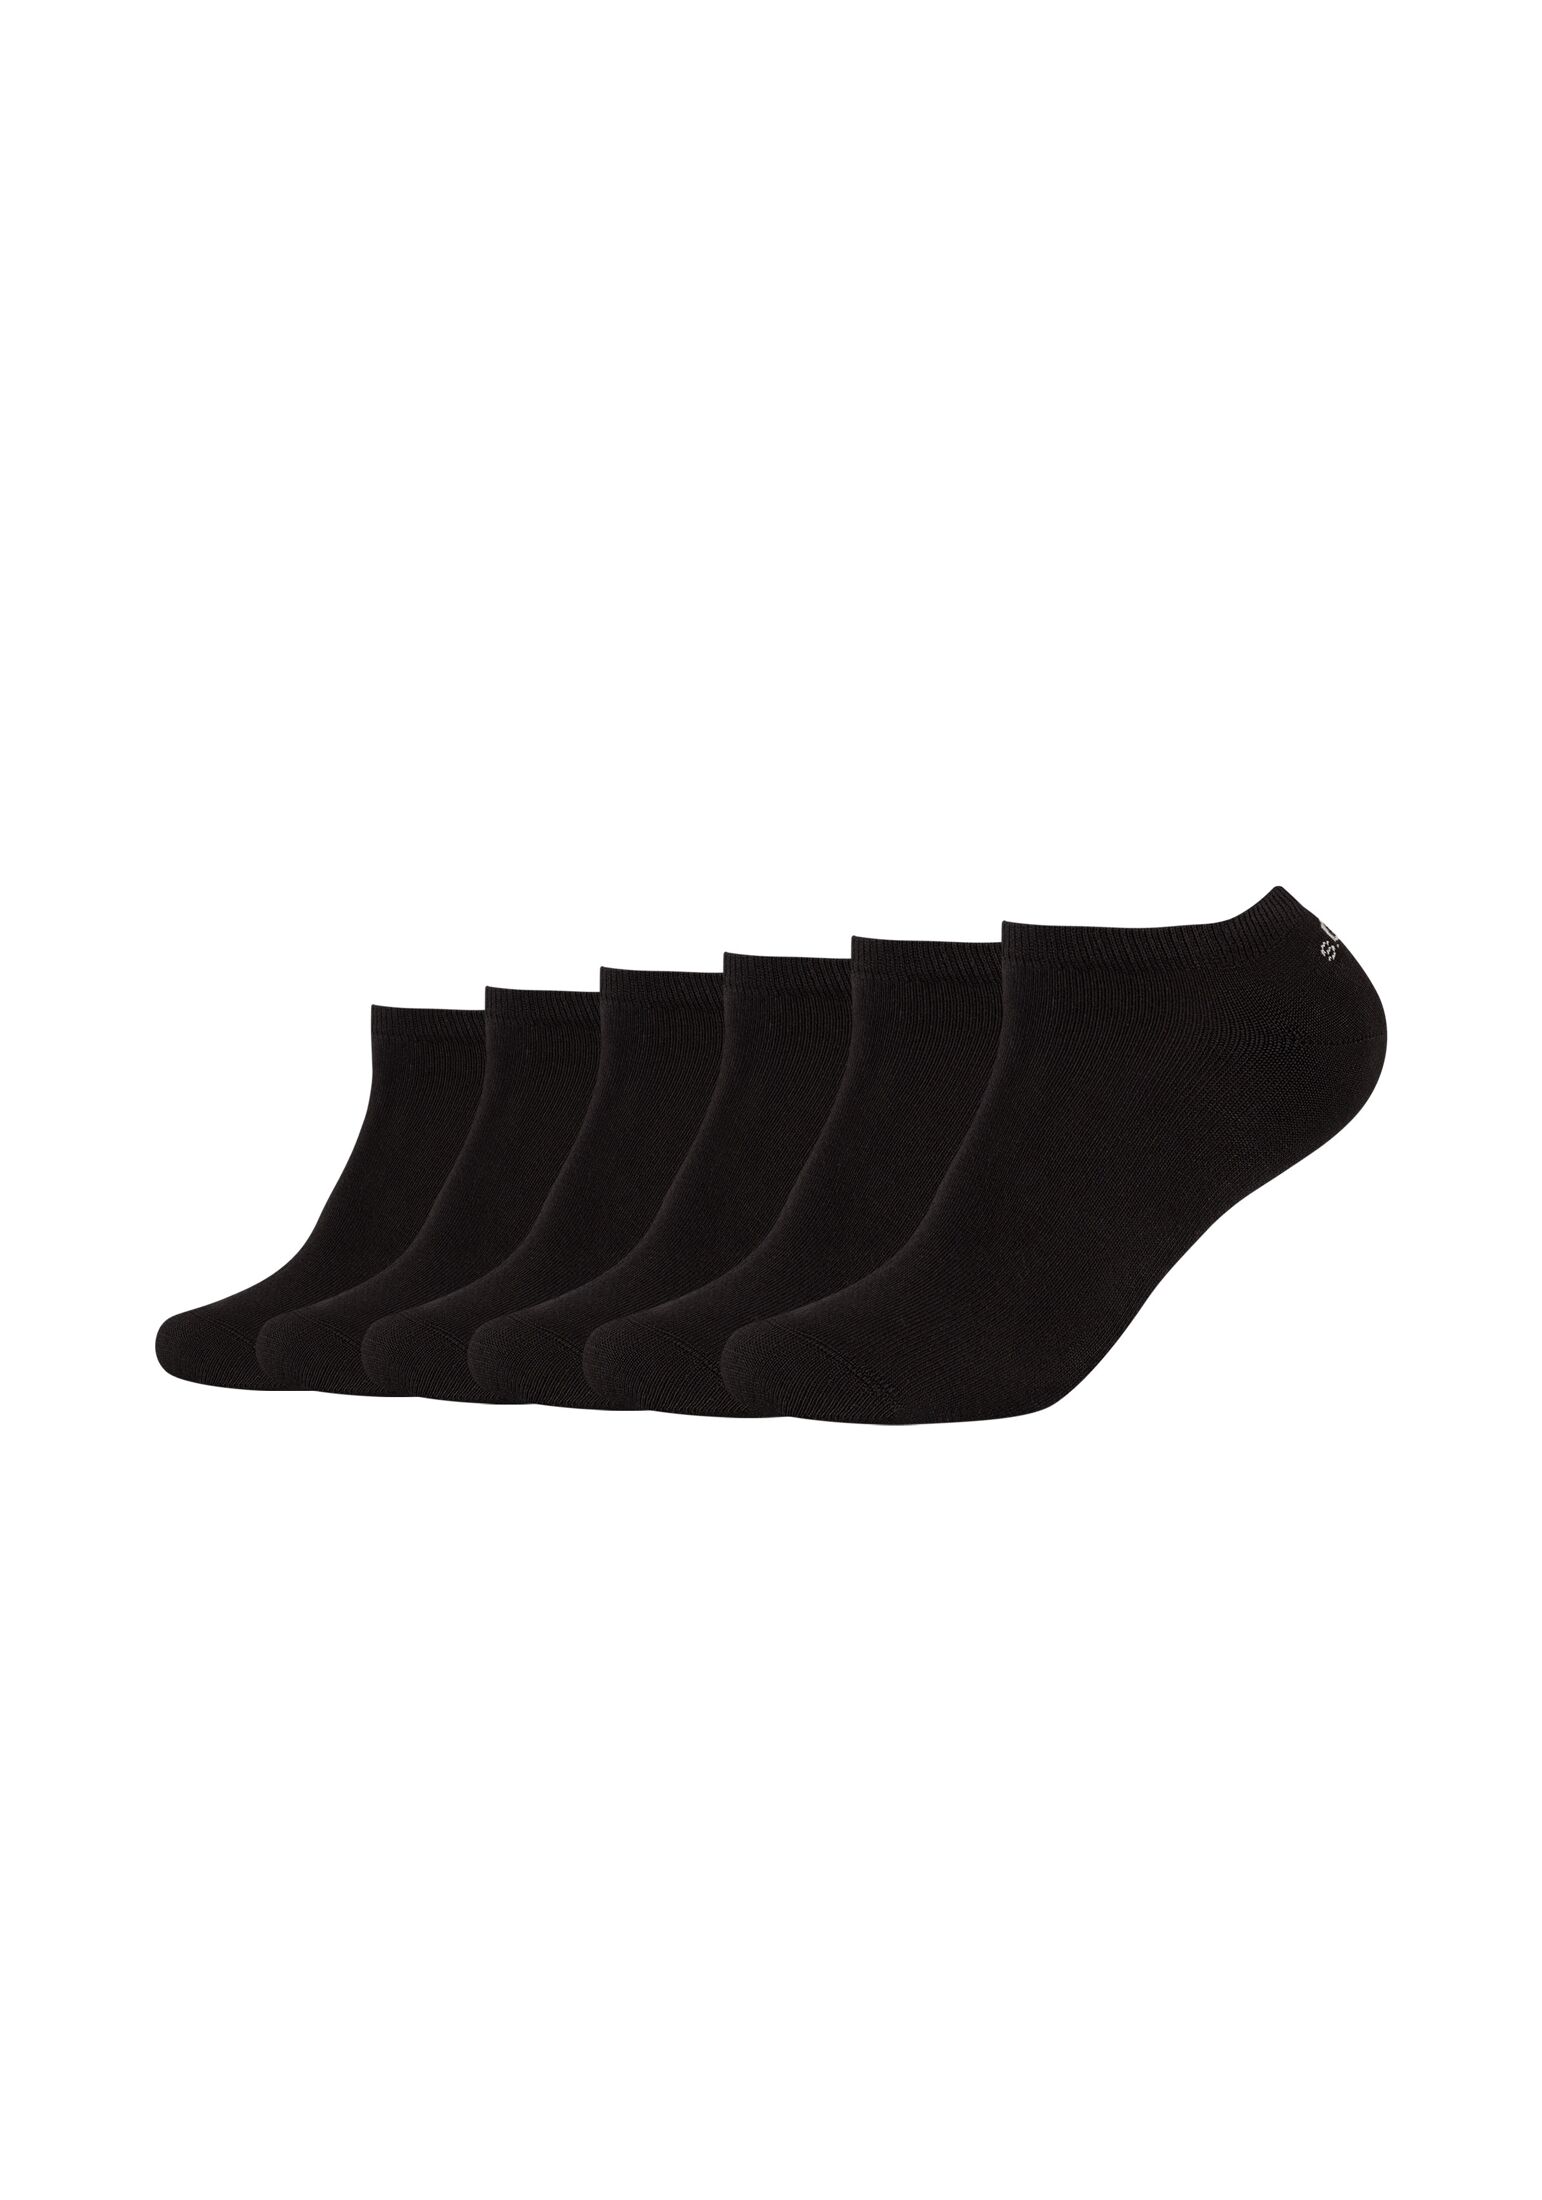 Носки s.Oliver Sneaker 6 шт originals, черный